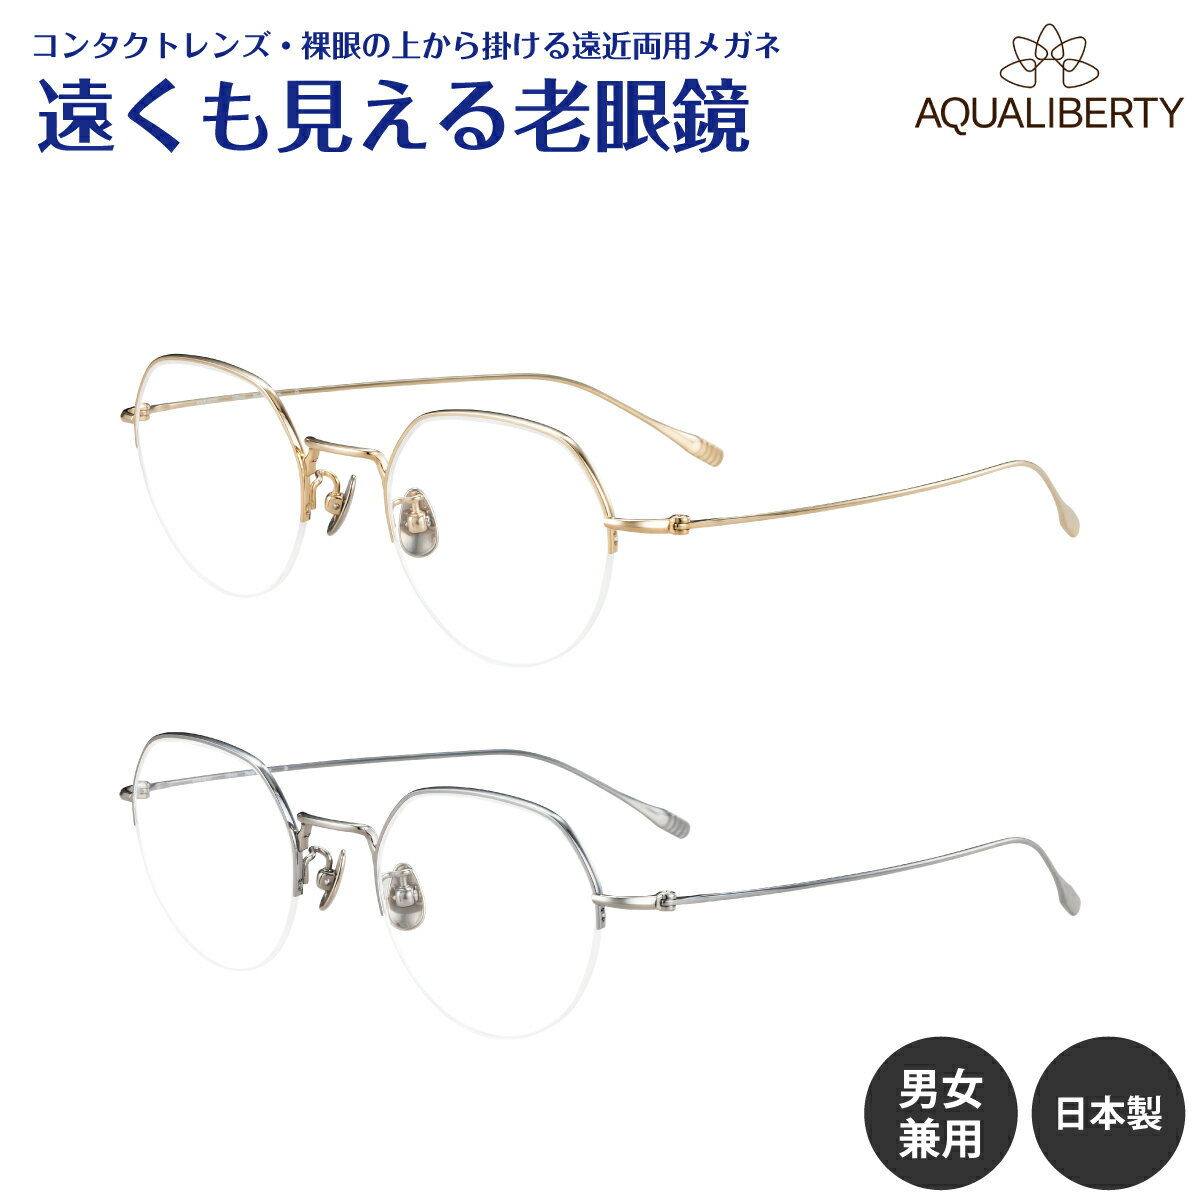 遠くも見える老眼鏡 遠近両用 メガネ 日本製 AQUALIBERTY アクアリバティ AQ22536 チタン ハーフリム ナイロール クラウンパント シャルマン +1.0 +1.5 +2.0 +2.5 リーディンググラス シニアグラス 素通し 老眼 レディース メンズ 女性 男性 遠く ぼやけない おしゃれ